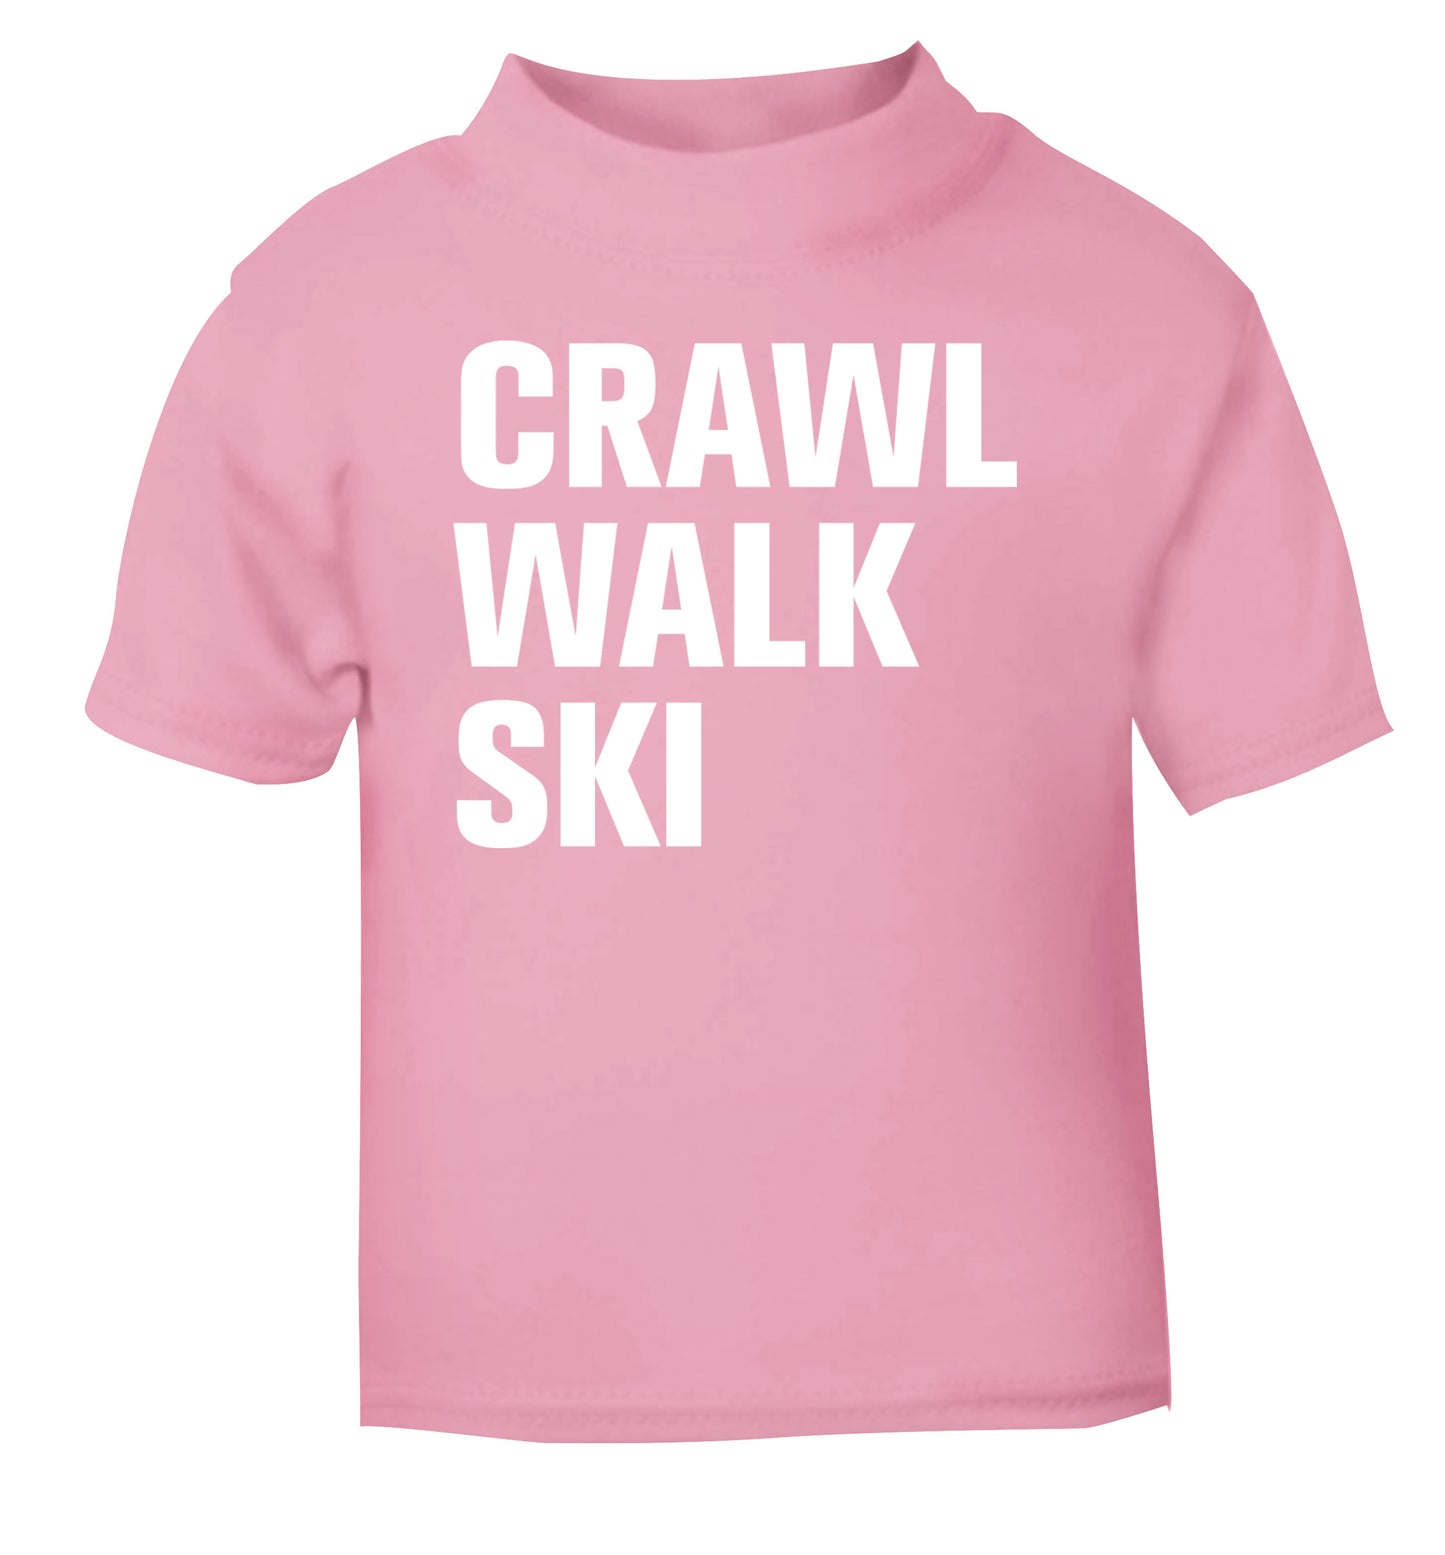 Crawl walk ski light pink Baby Toddler Tshirt 2 Years